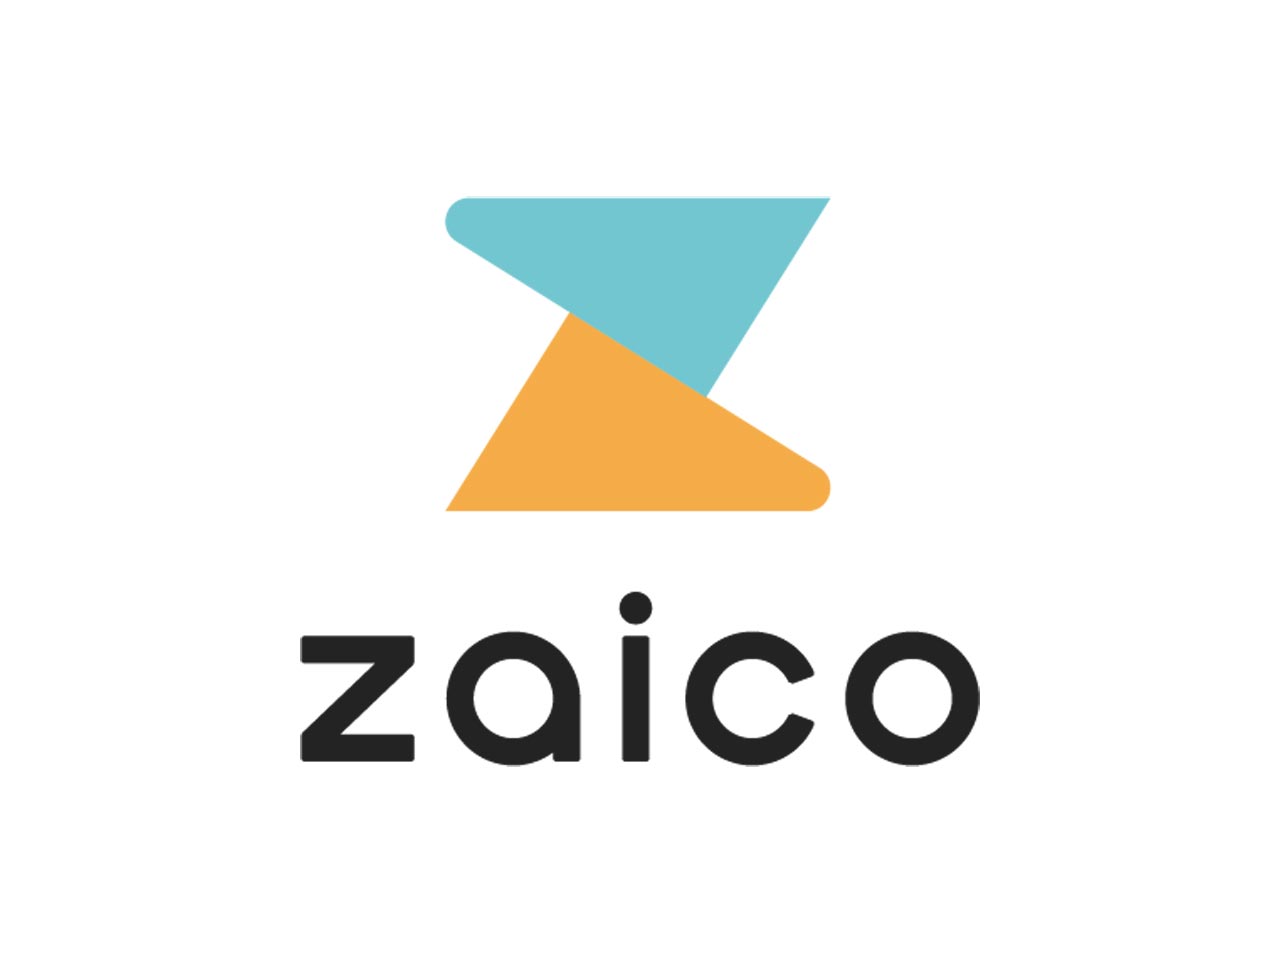 同社は、クラウド在庫管理アプリ『zaico』を運営するベンチャー企業である。